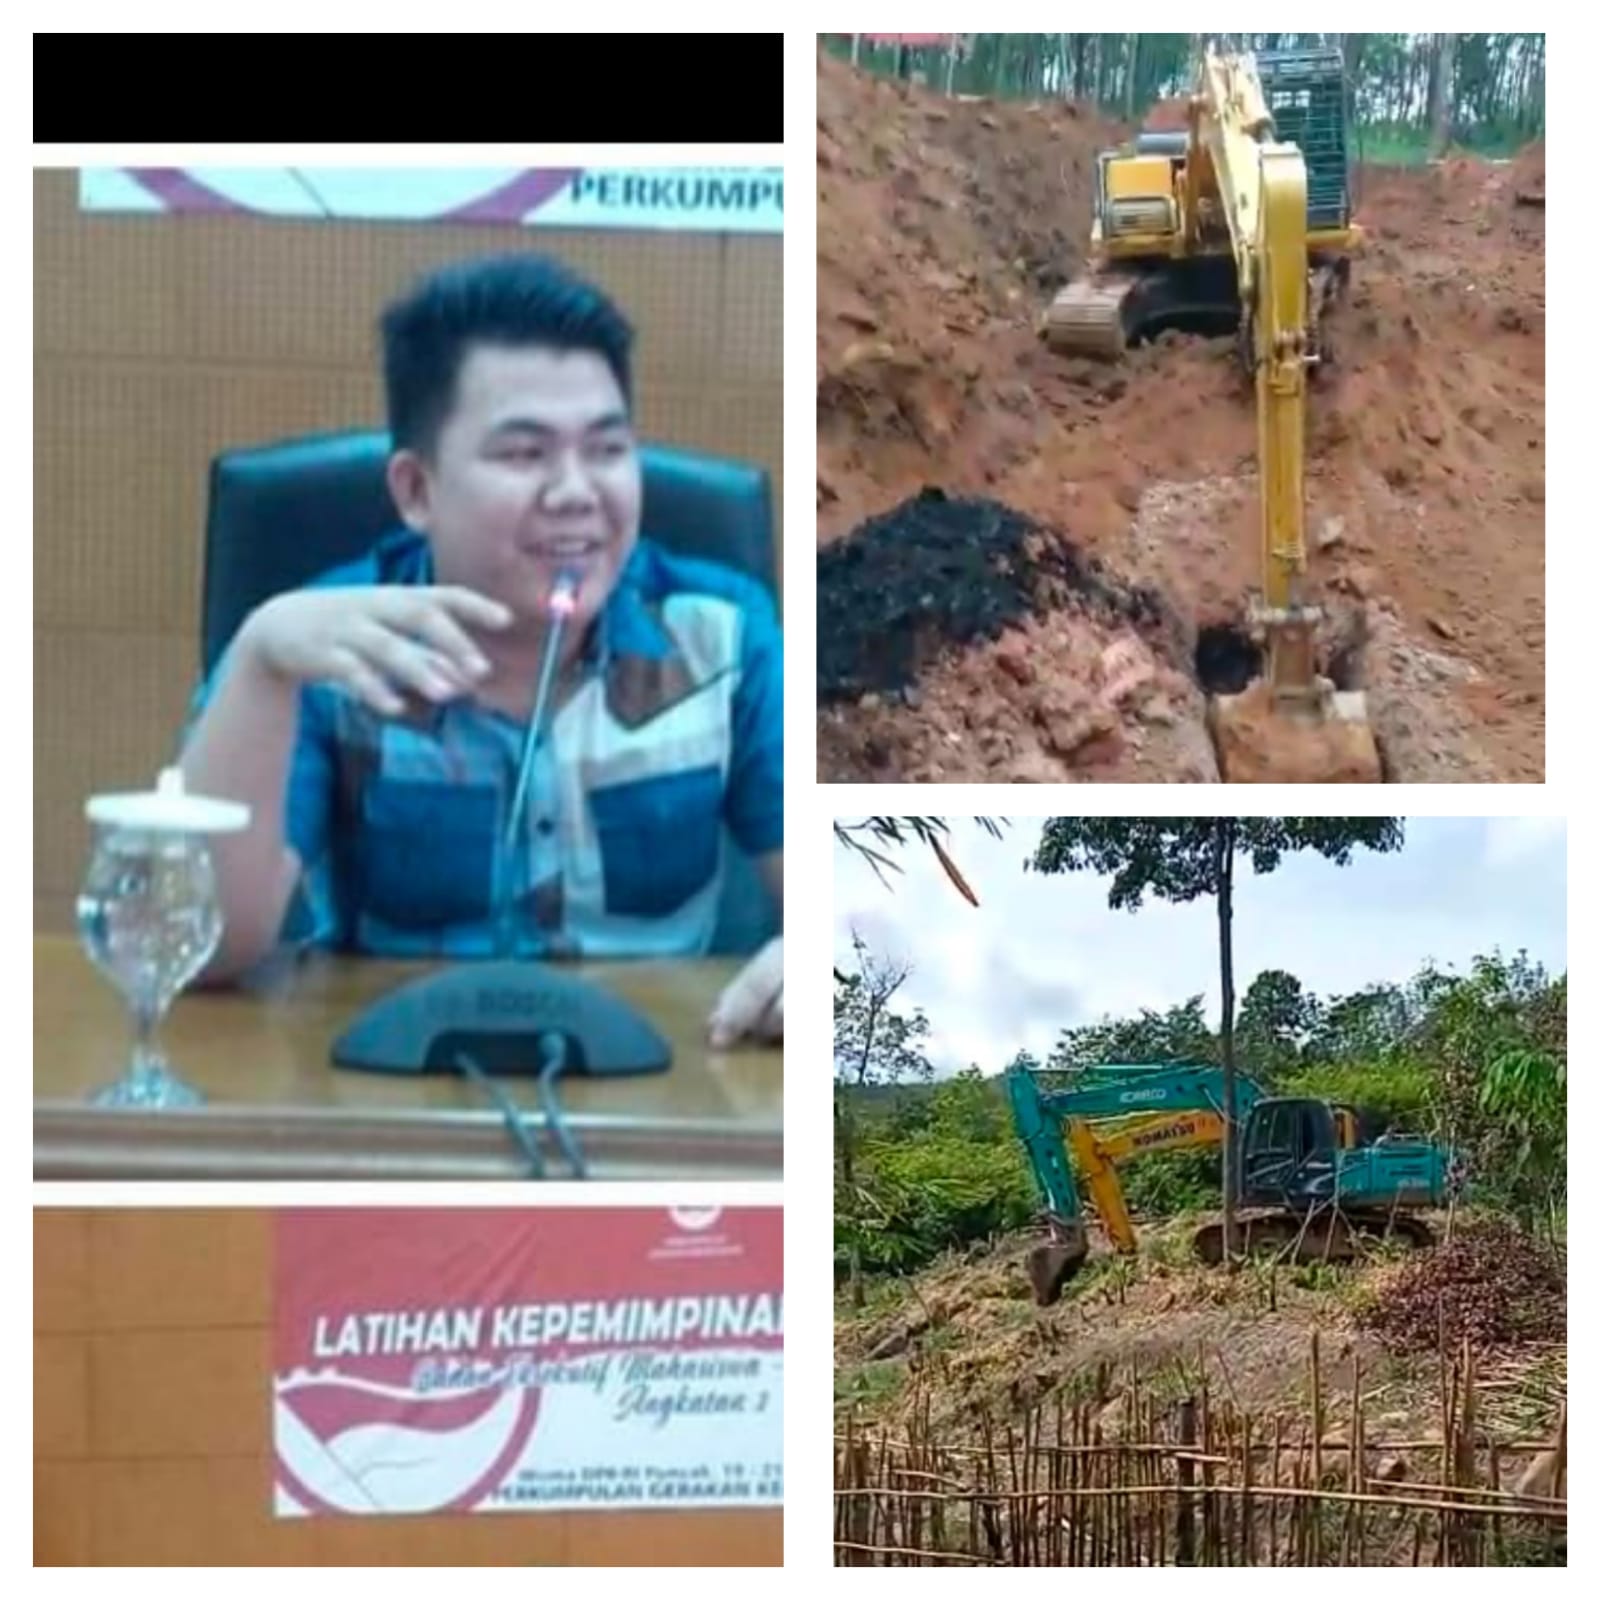 Mahendra Minta Polisi Ungkap Dalang Penambangan Batubara Ilegal di Desa Lubuk Betung Merapi Selatan